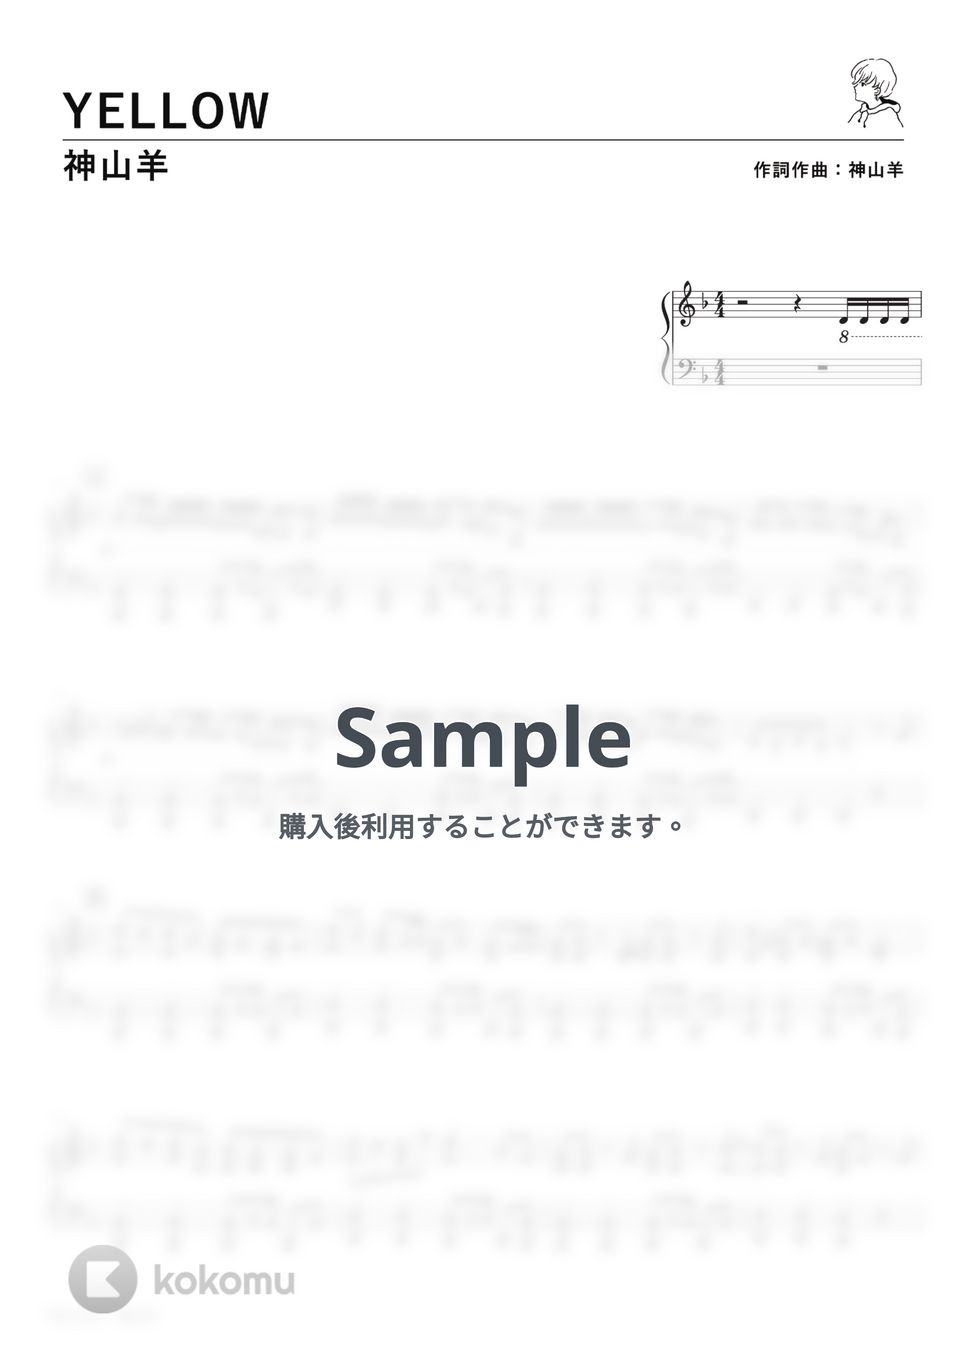 神山羊 - YELLOW (PianoSolo) by 深根 / Fukane